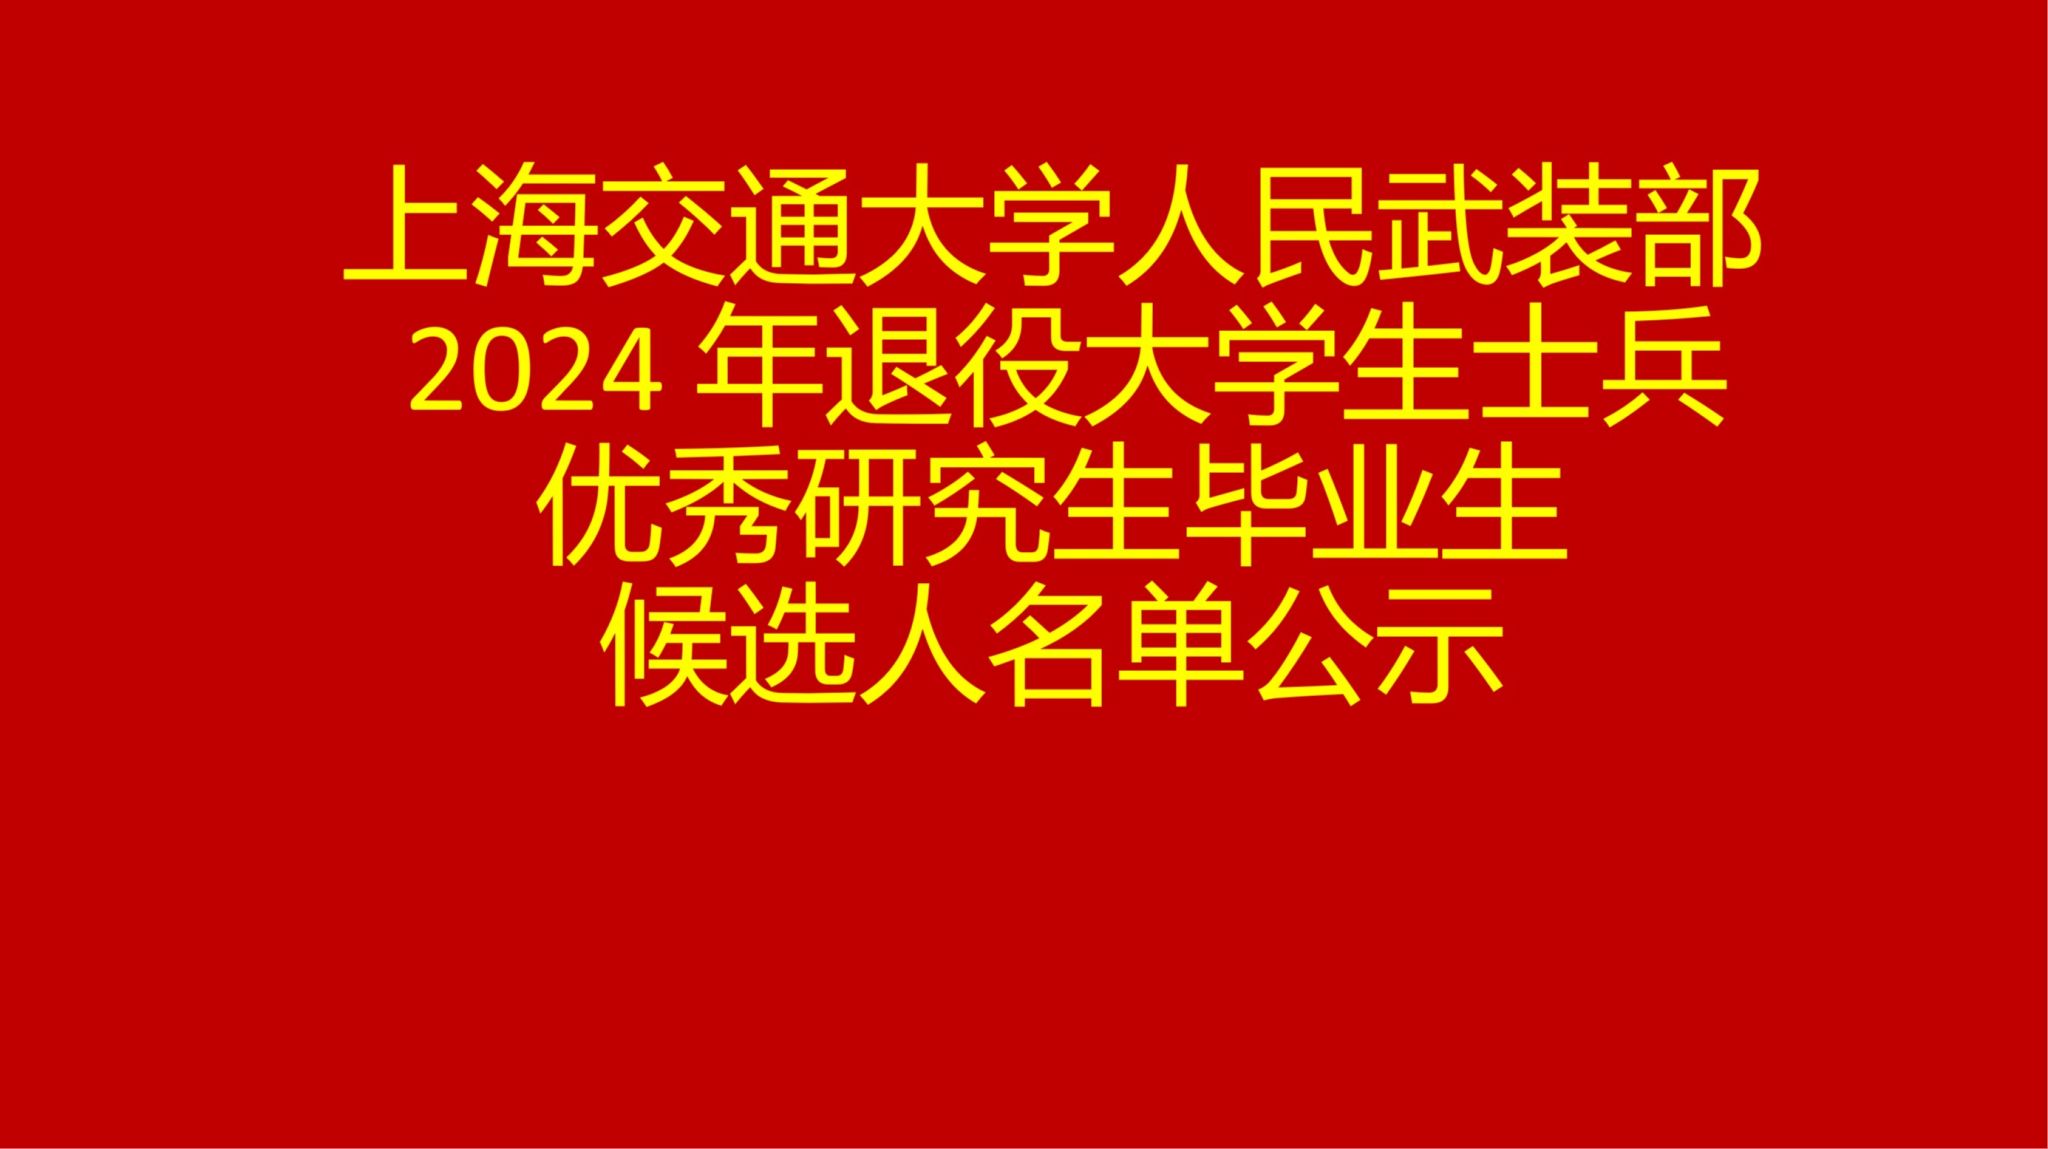 上海交通大学人民武装部 2024年退役大学生士兵优秀研究生毕业生候选人名单公示